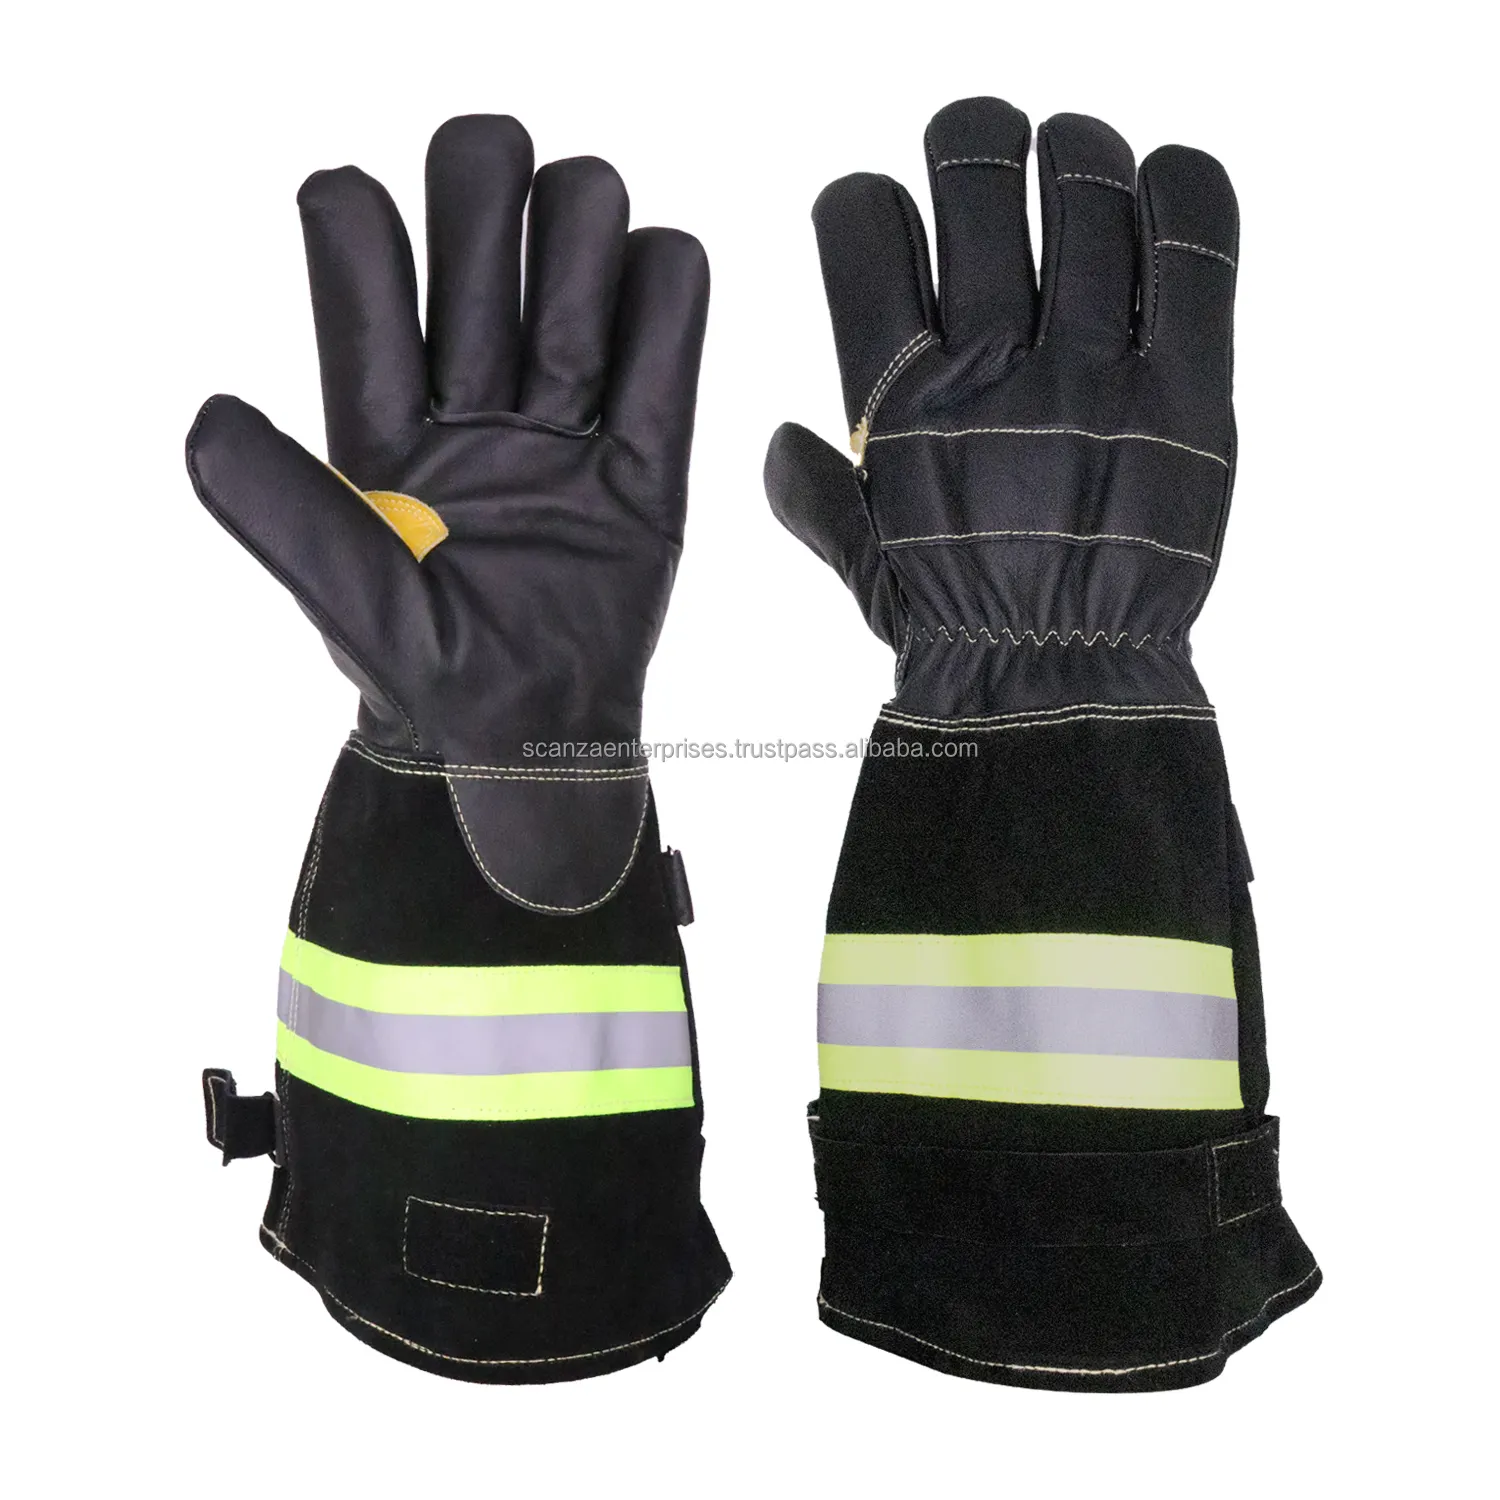 Strukturelle Brand bekämpfung Wasserdichte, verschleiß feste und hitze beständige feuerfeste Rettungs handschuhe